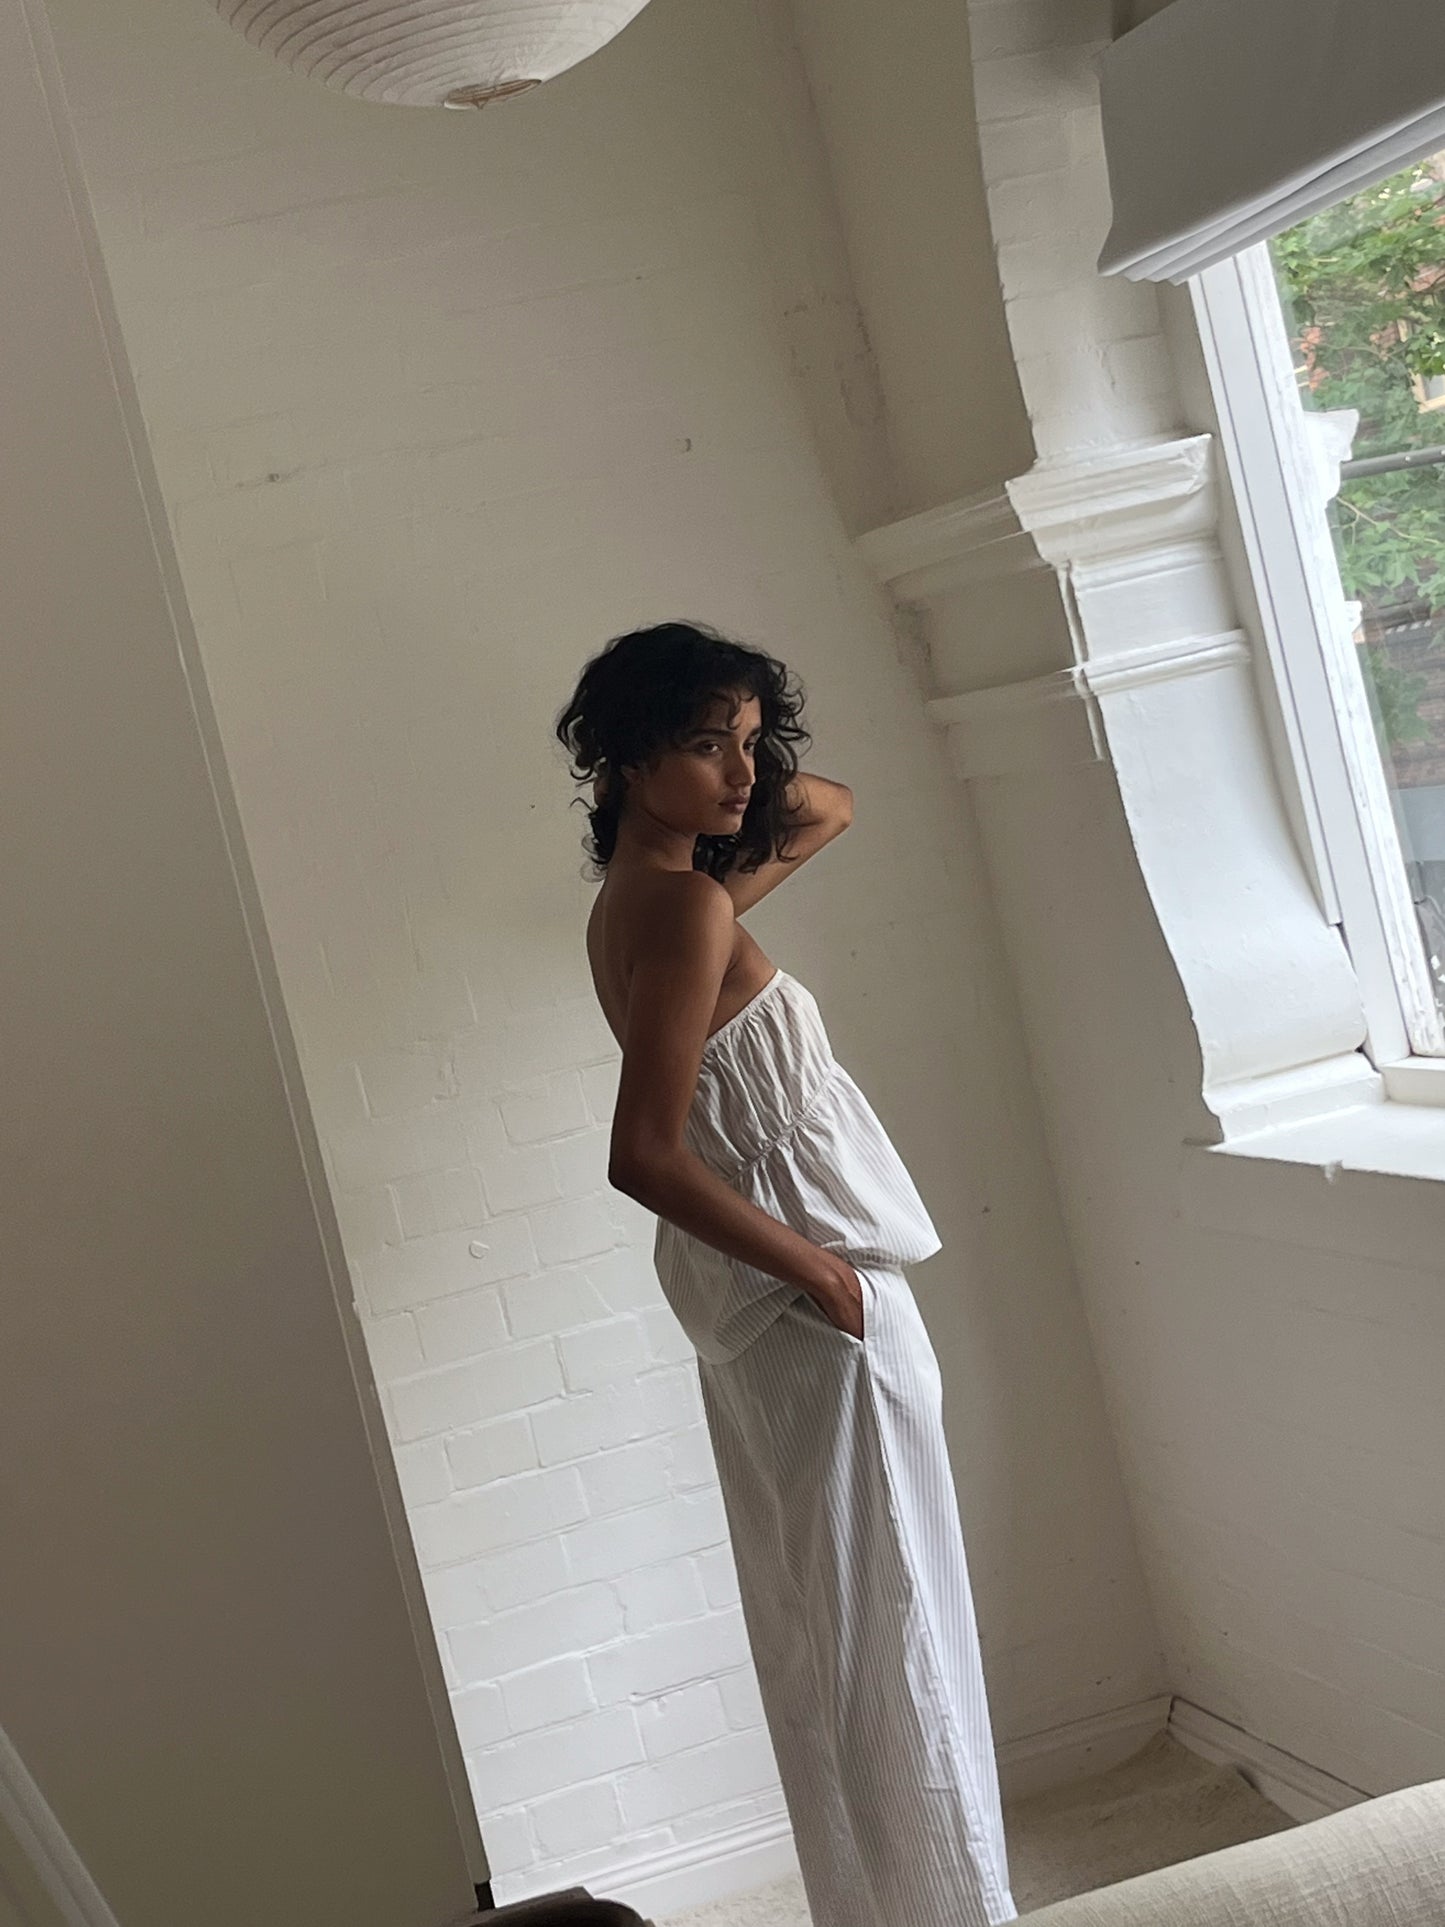 Female model wearing Ease Trouser - Story Stripe by Deiji Studios against plain background